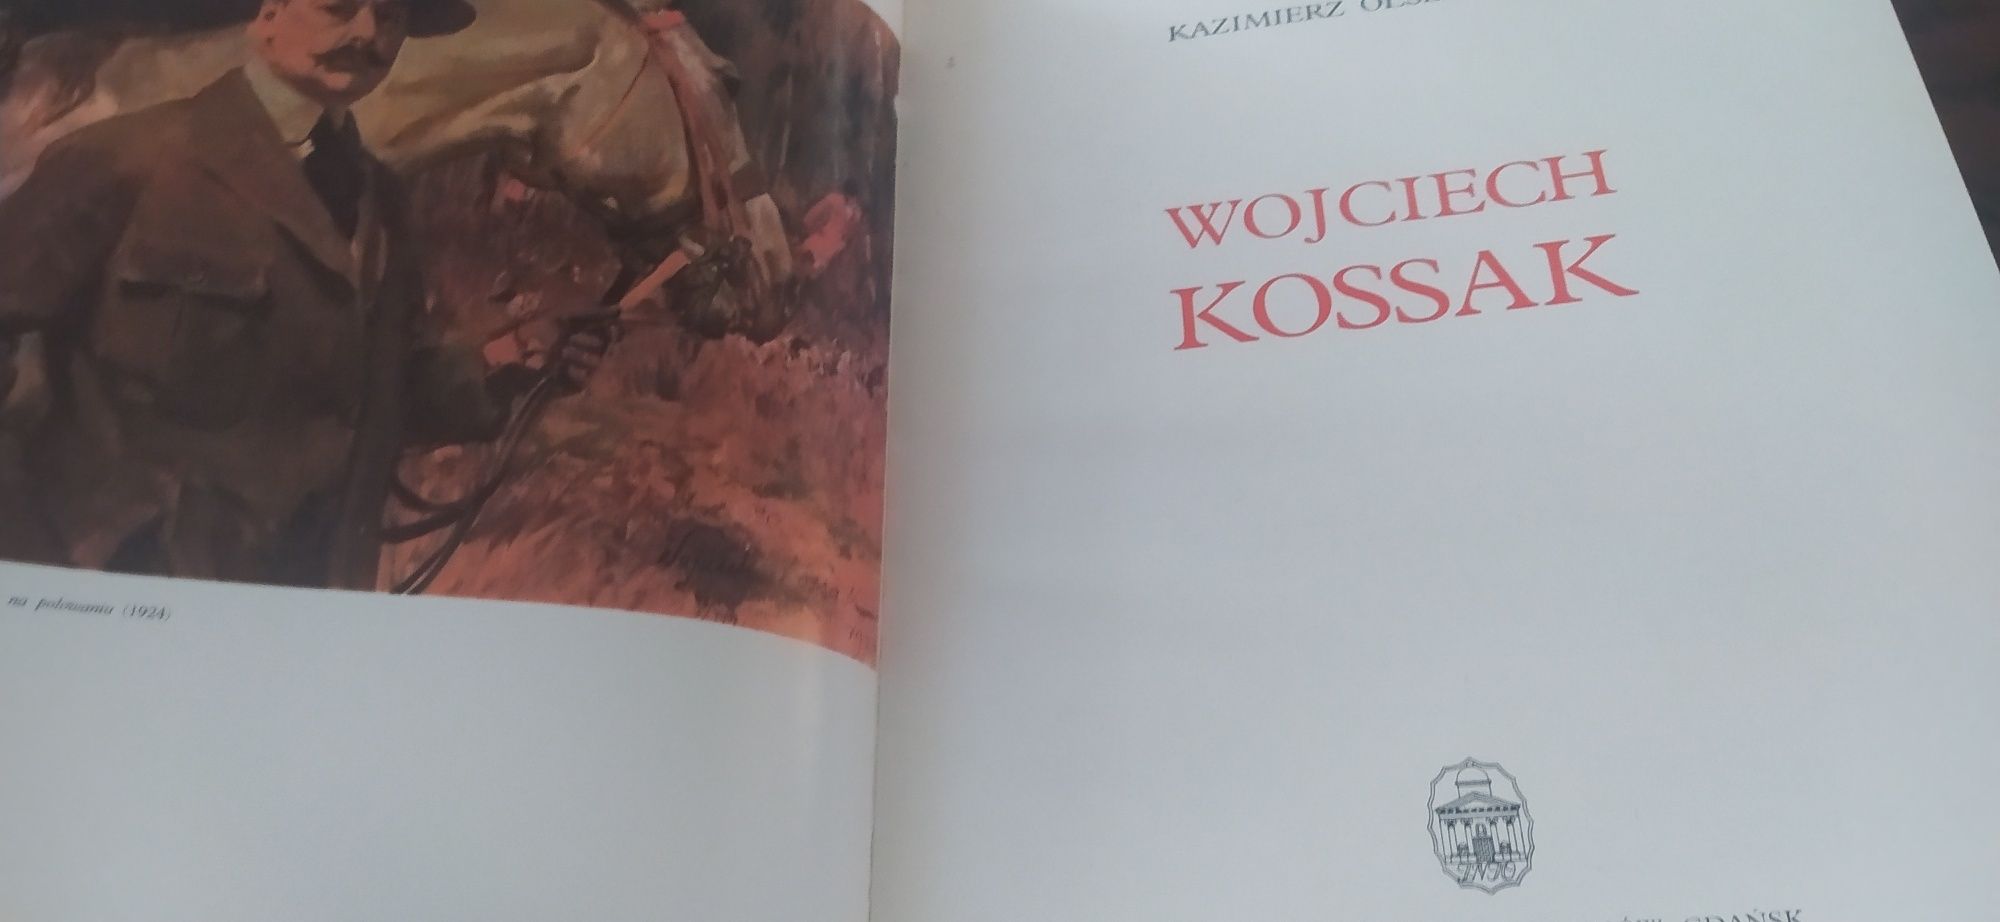 Wojciech Kossak Kazimierz Olszański